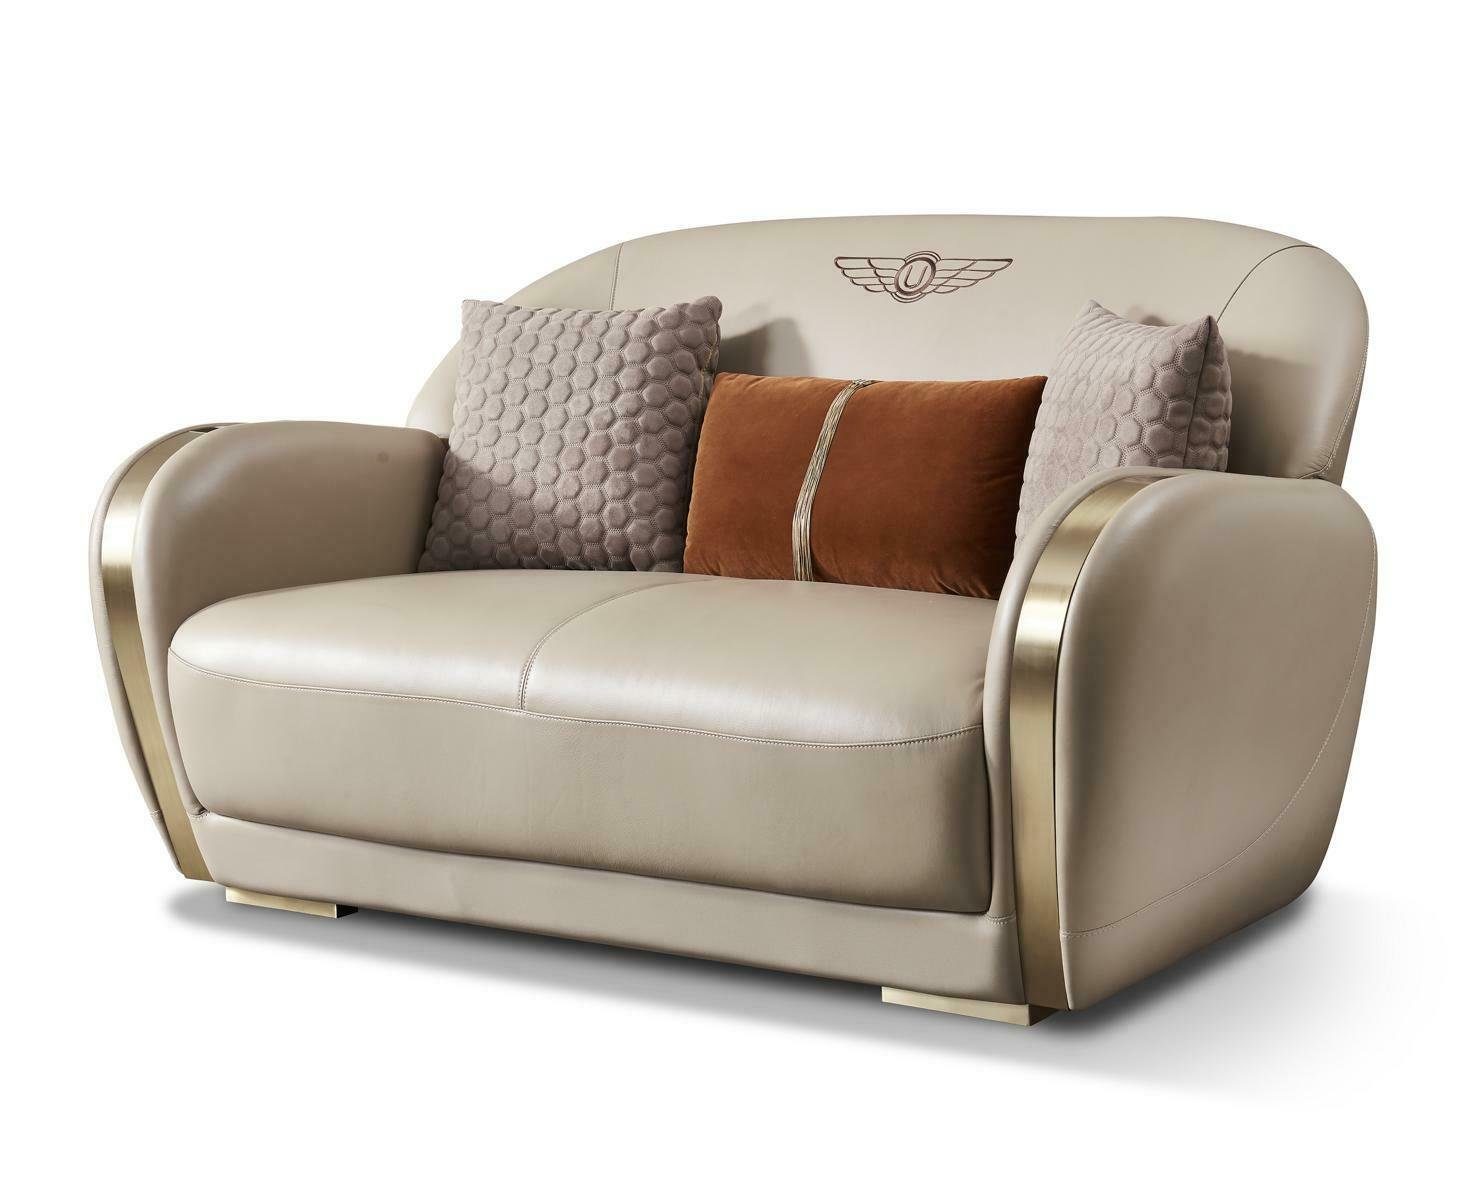 JVmoebel Sofa, Couch Chesterfield Leder Textil Polster Sofa Couchen Sofas Designer